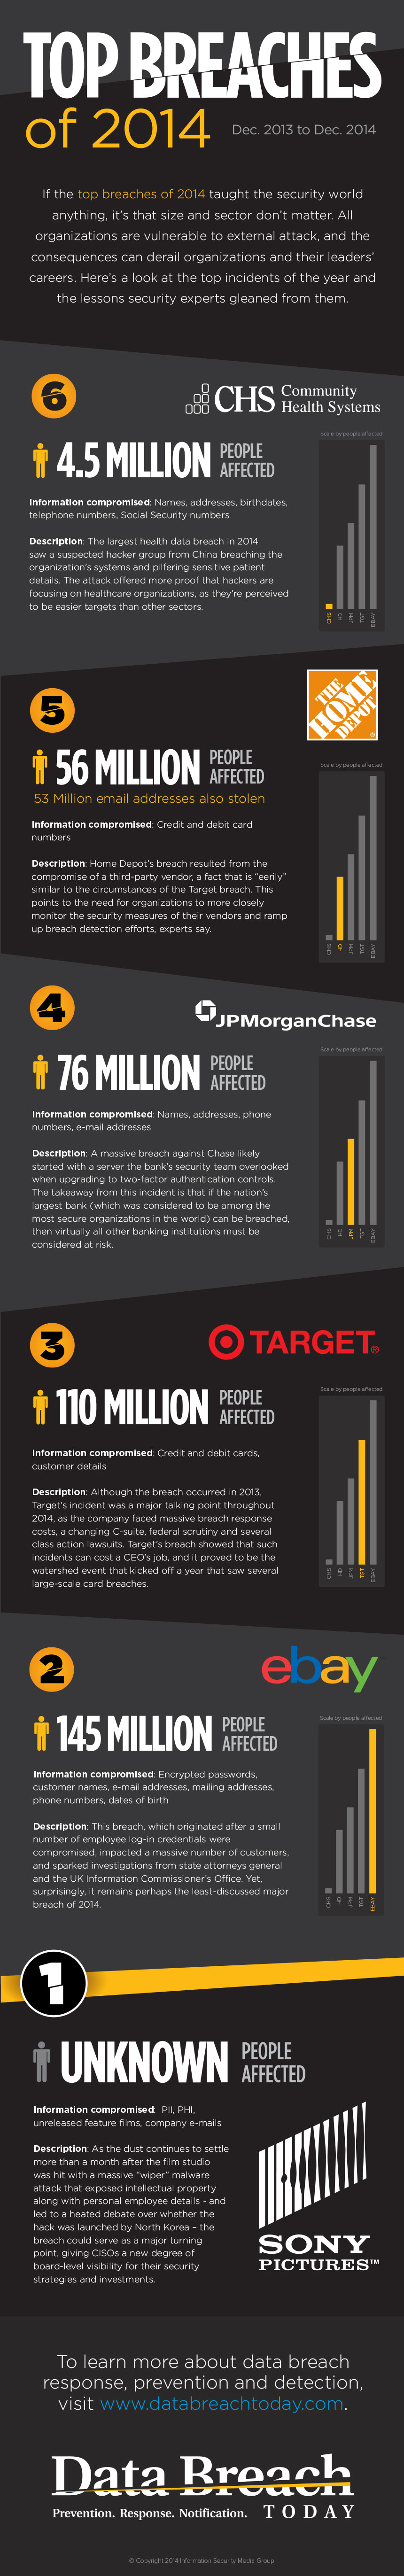 Top Data Breaches of 2014 - BankInfoSecurity